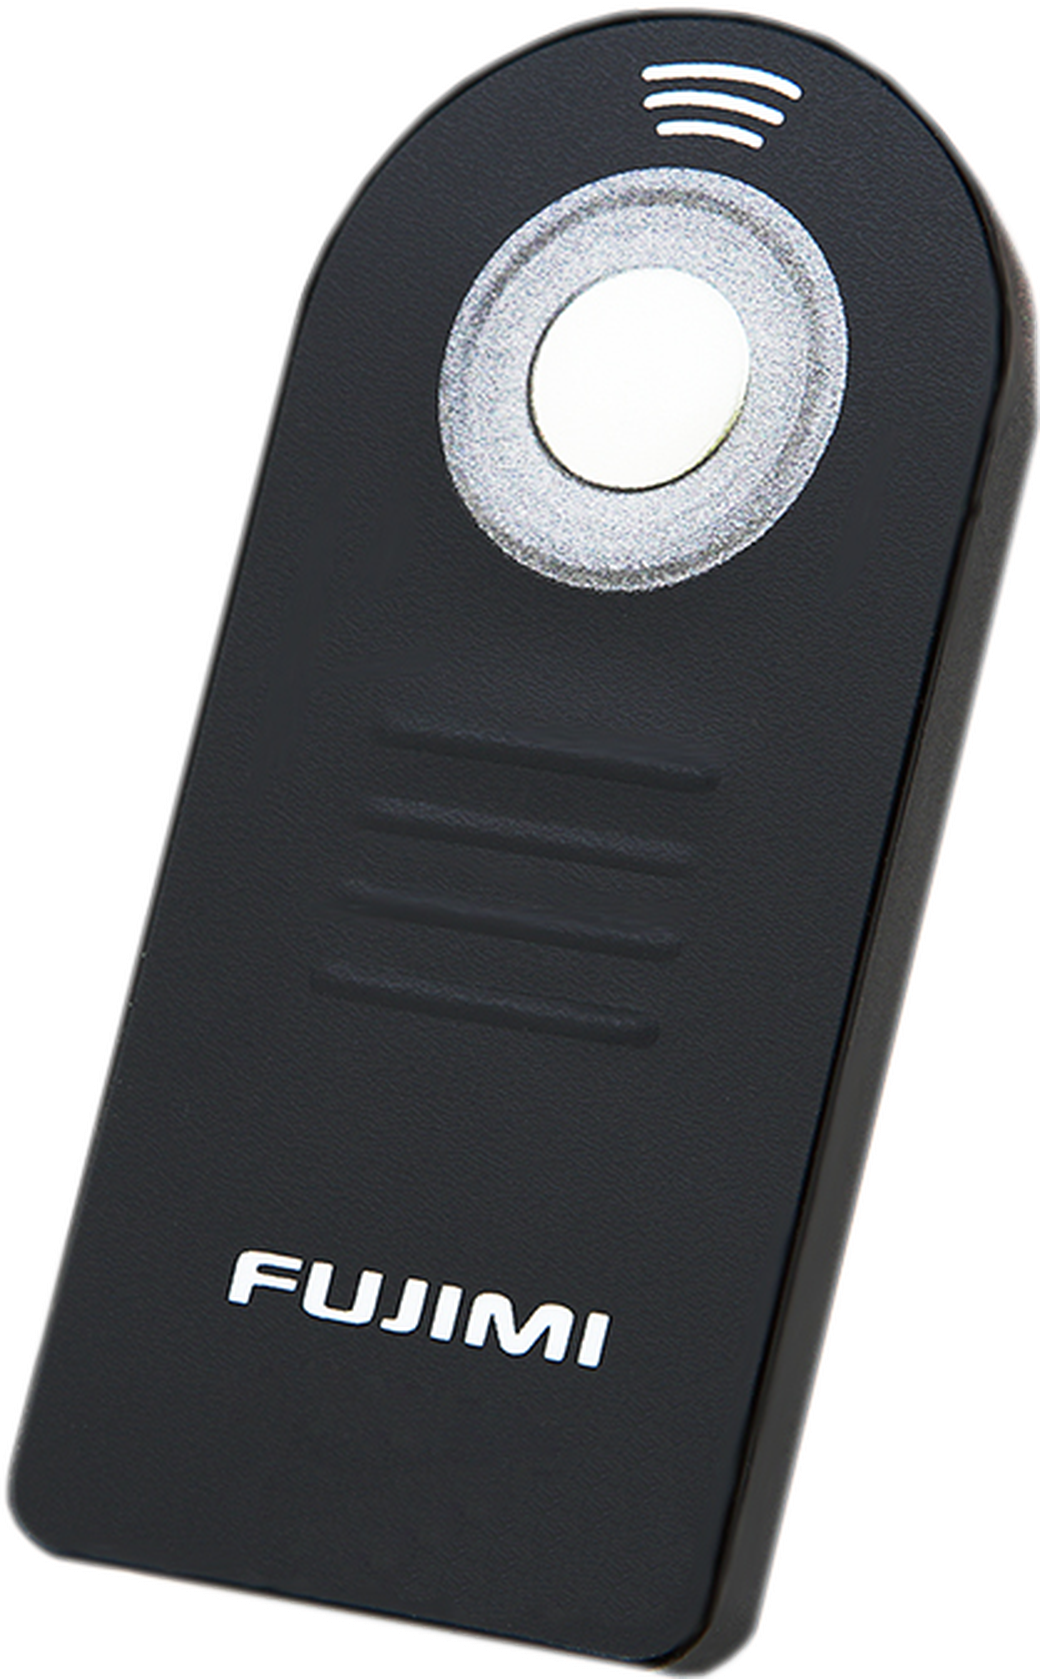 Пульт ДУ Fujimi FJ ML-L3 для Nikon ИК фото